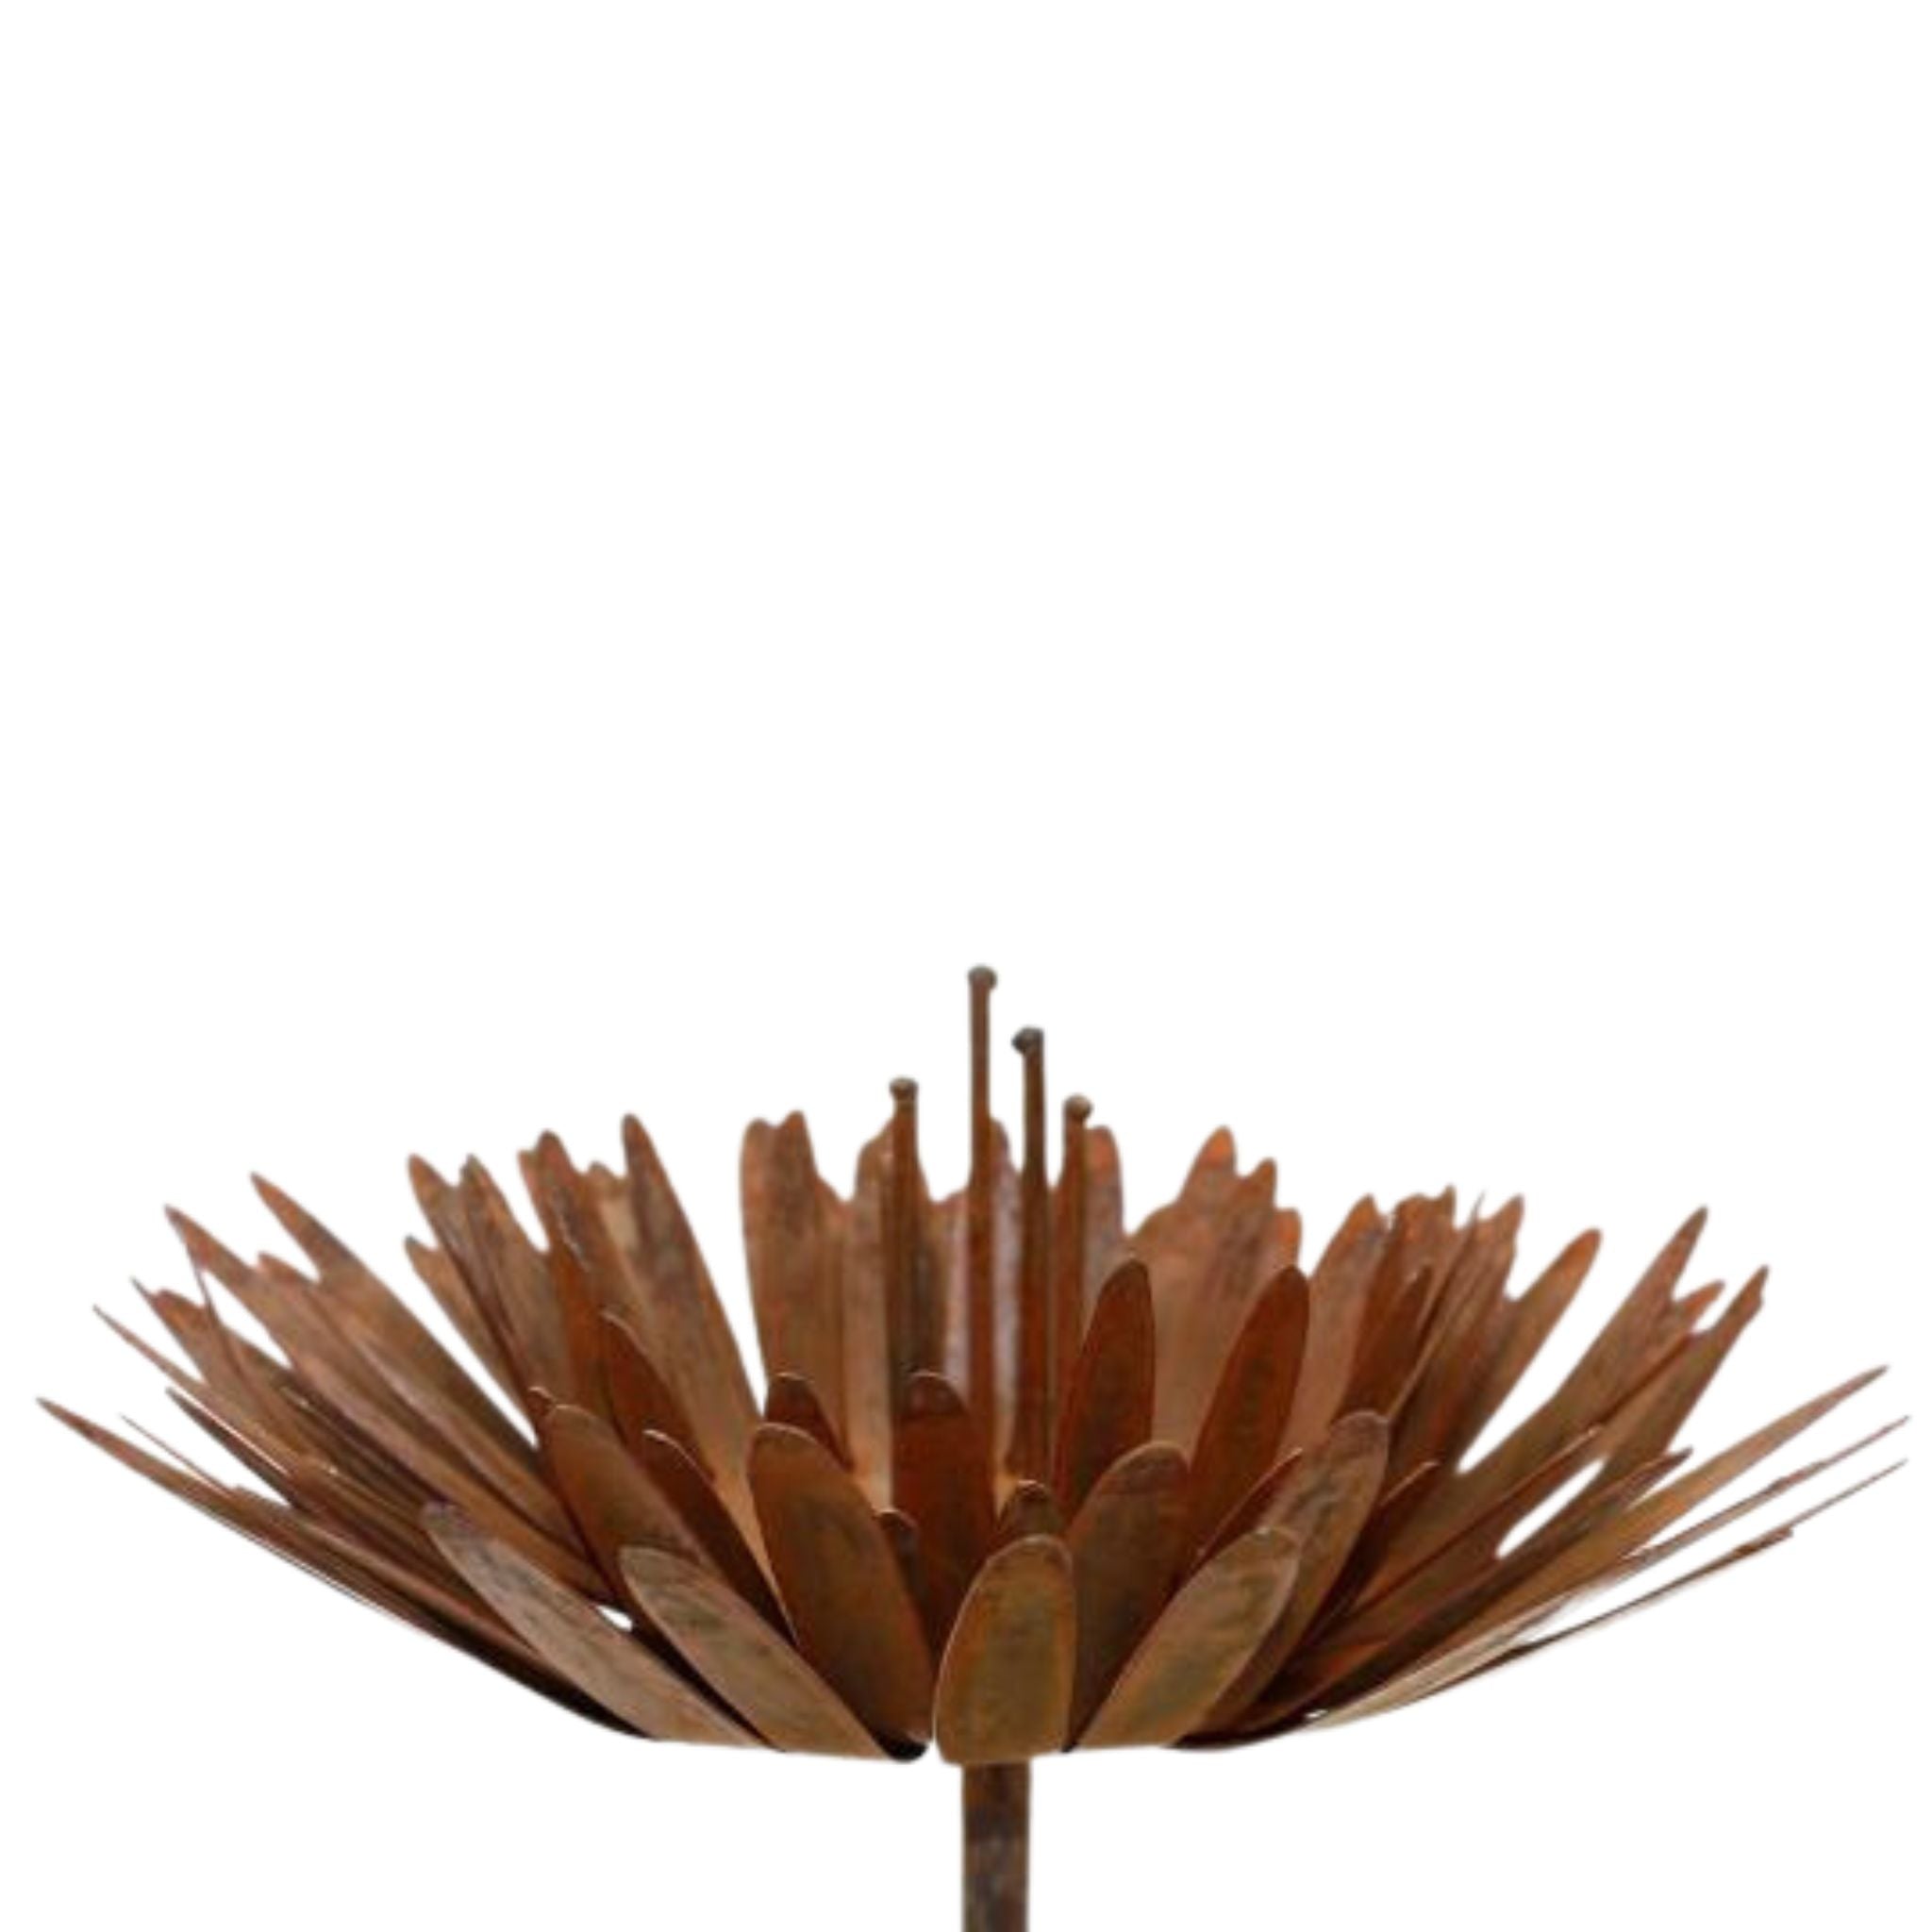 Handgefertigte Edelrost Chrysantheme in 3D Optik. Metall Blumen Deko Stecker als bezauberndes Accessoire für drinnen oder draußen.